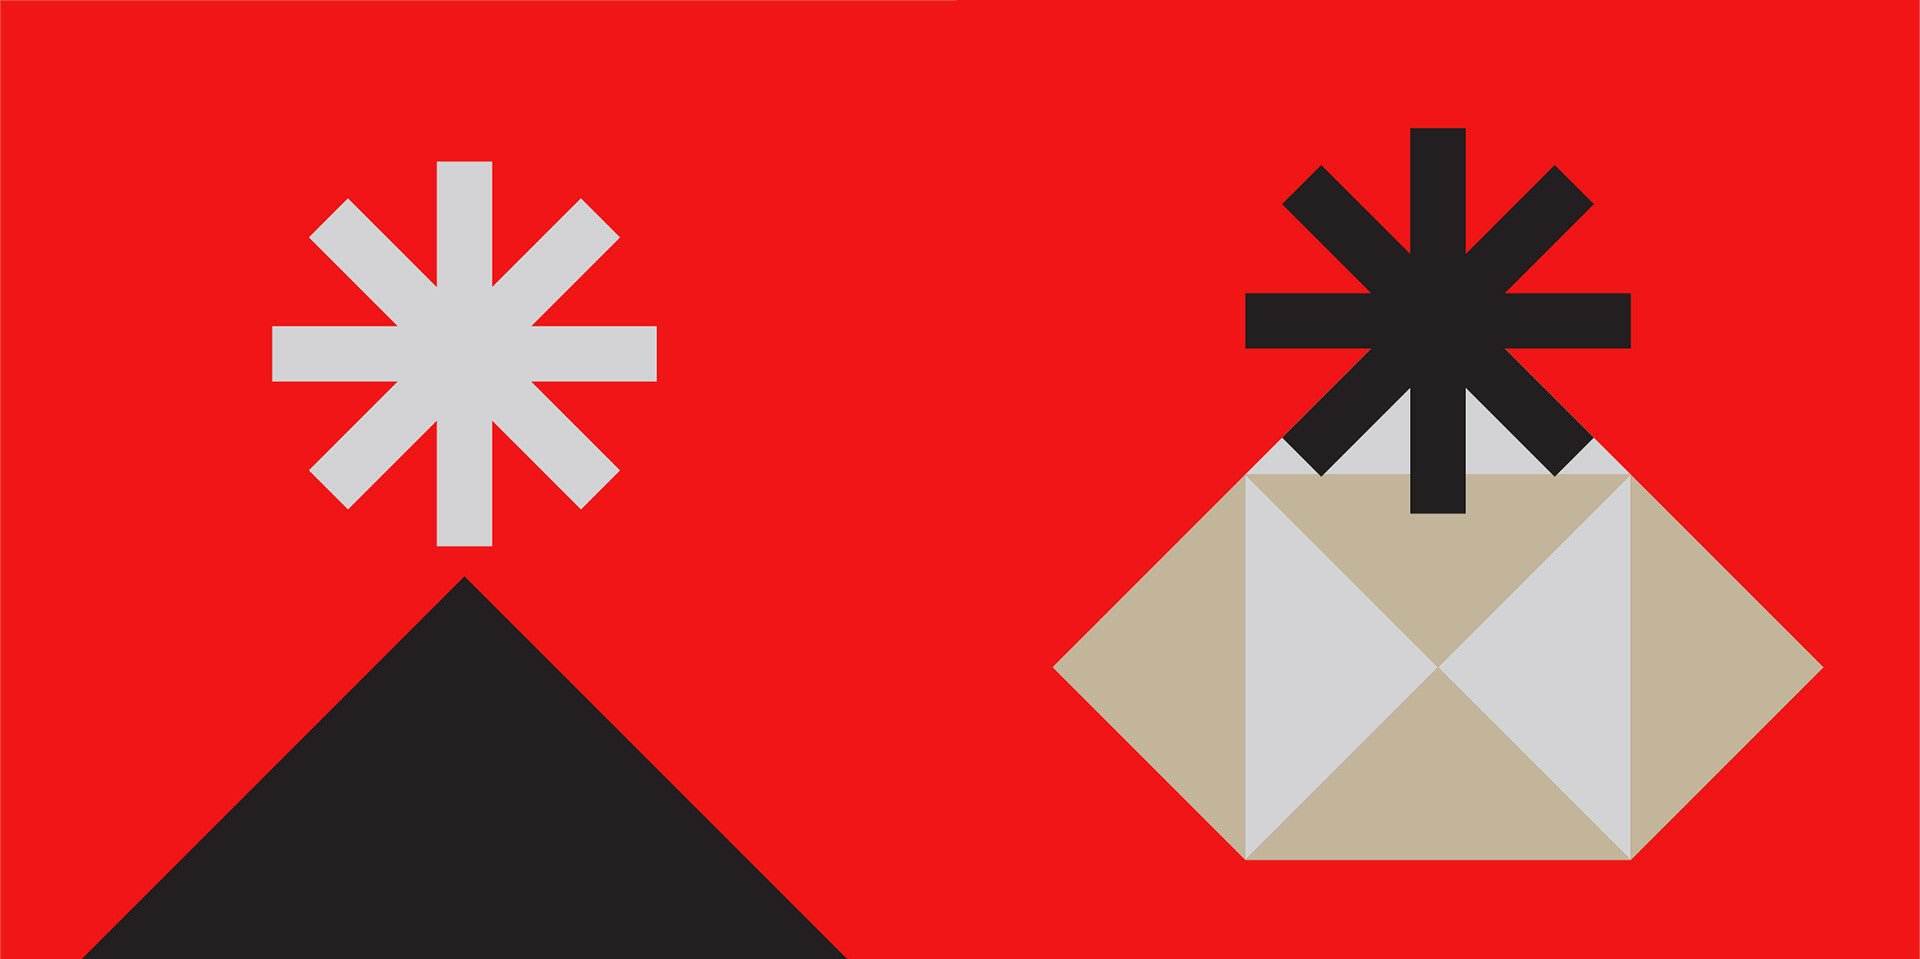 几何图案组成的创意圣诞贺卡设计作品欣赏。